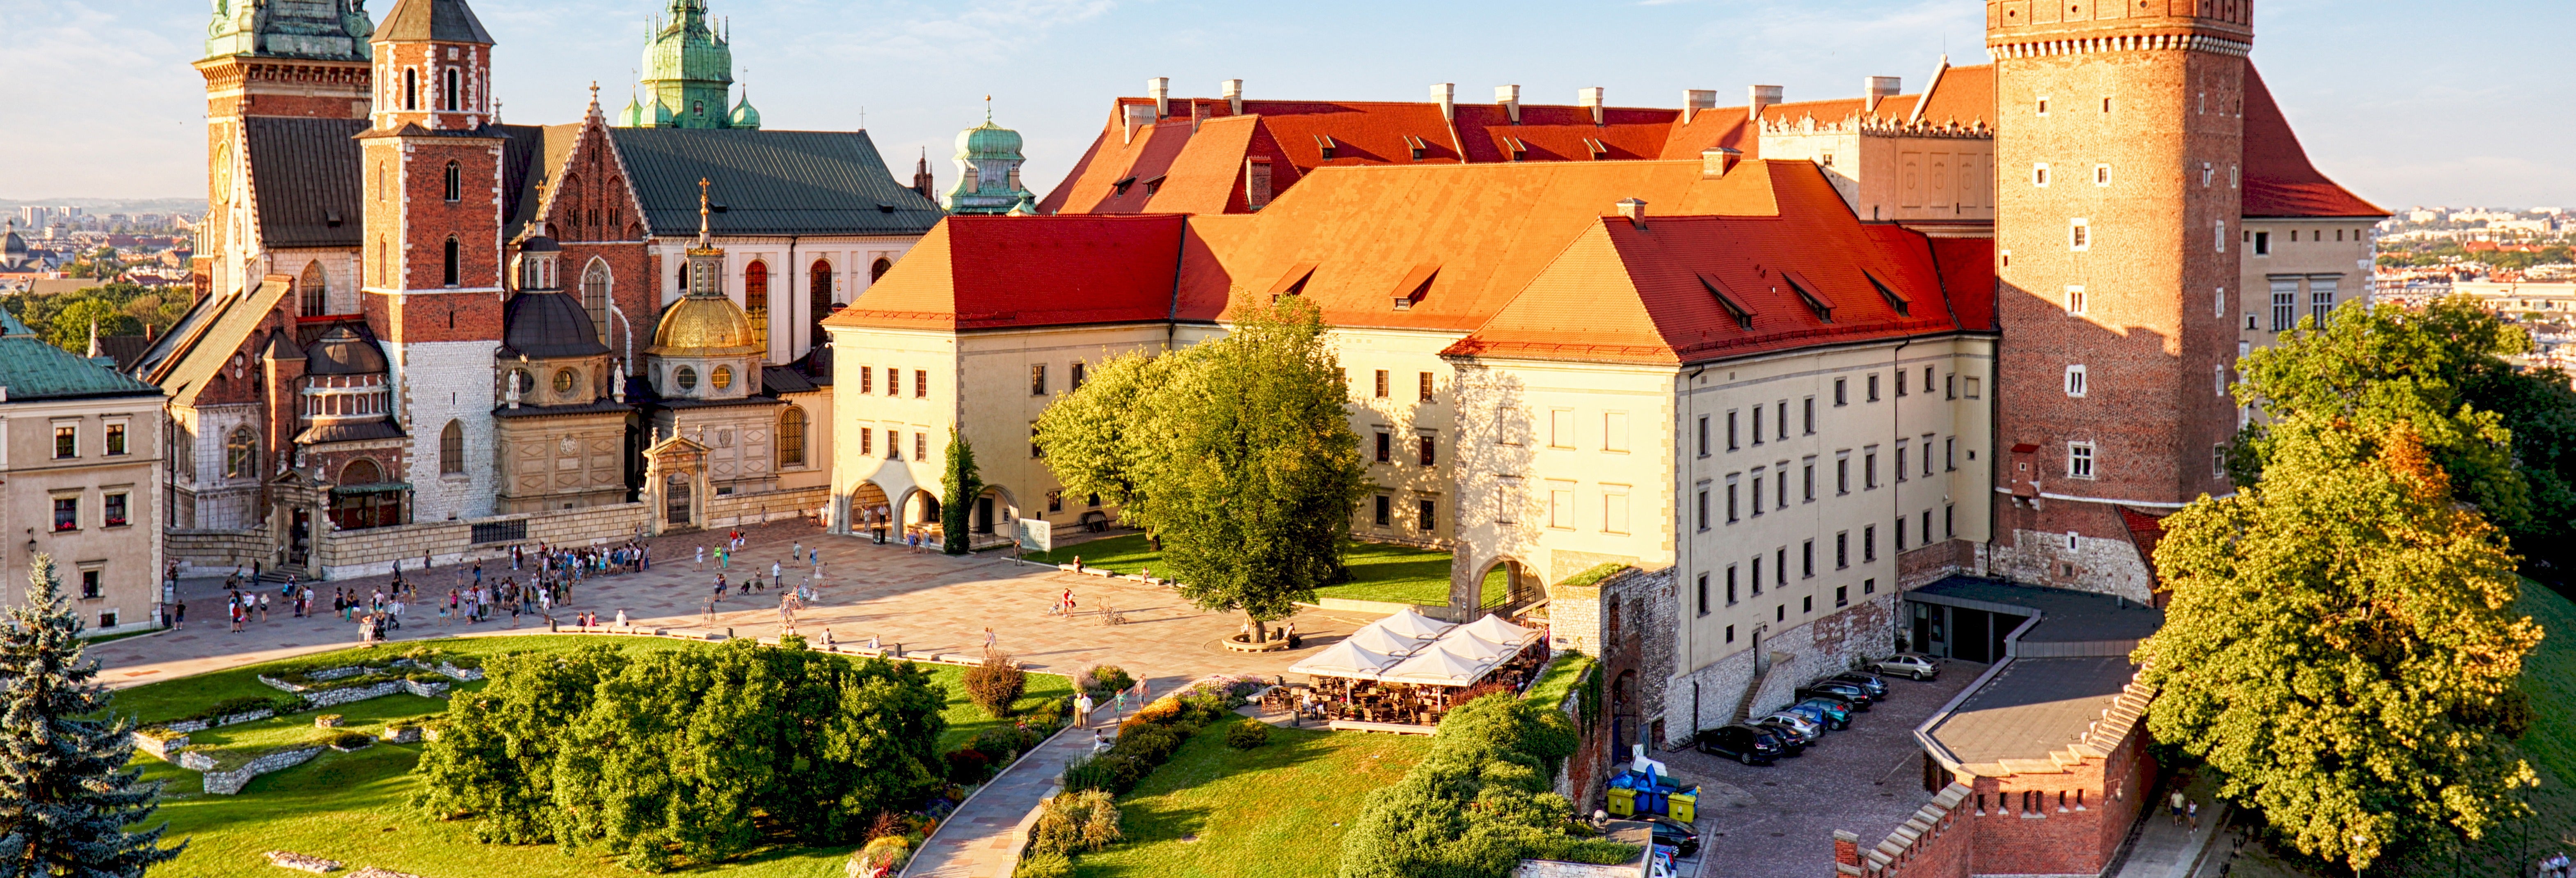 Krakow History Free Walking Tour